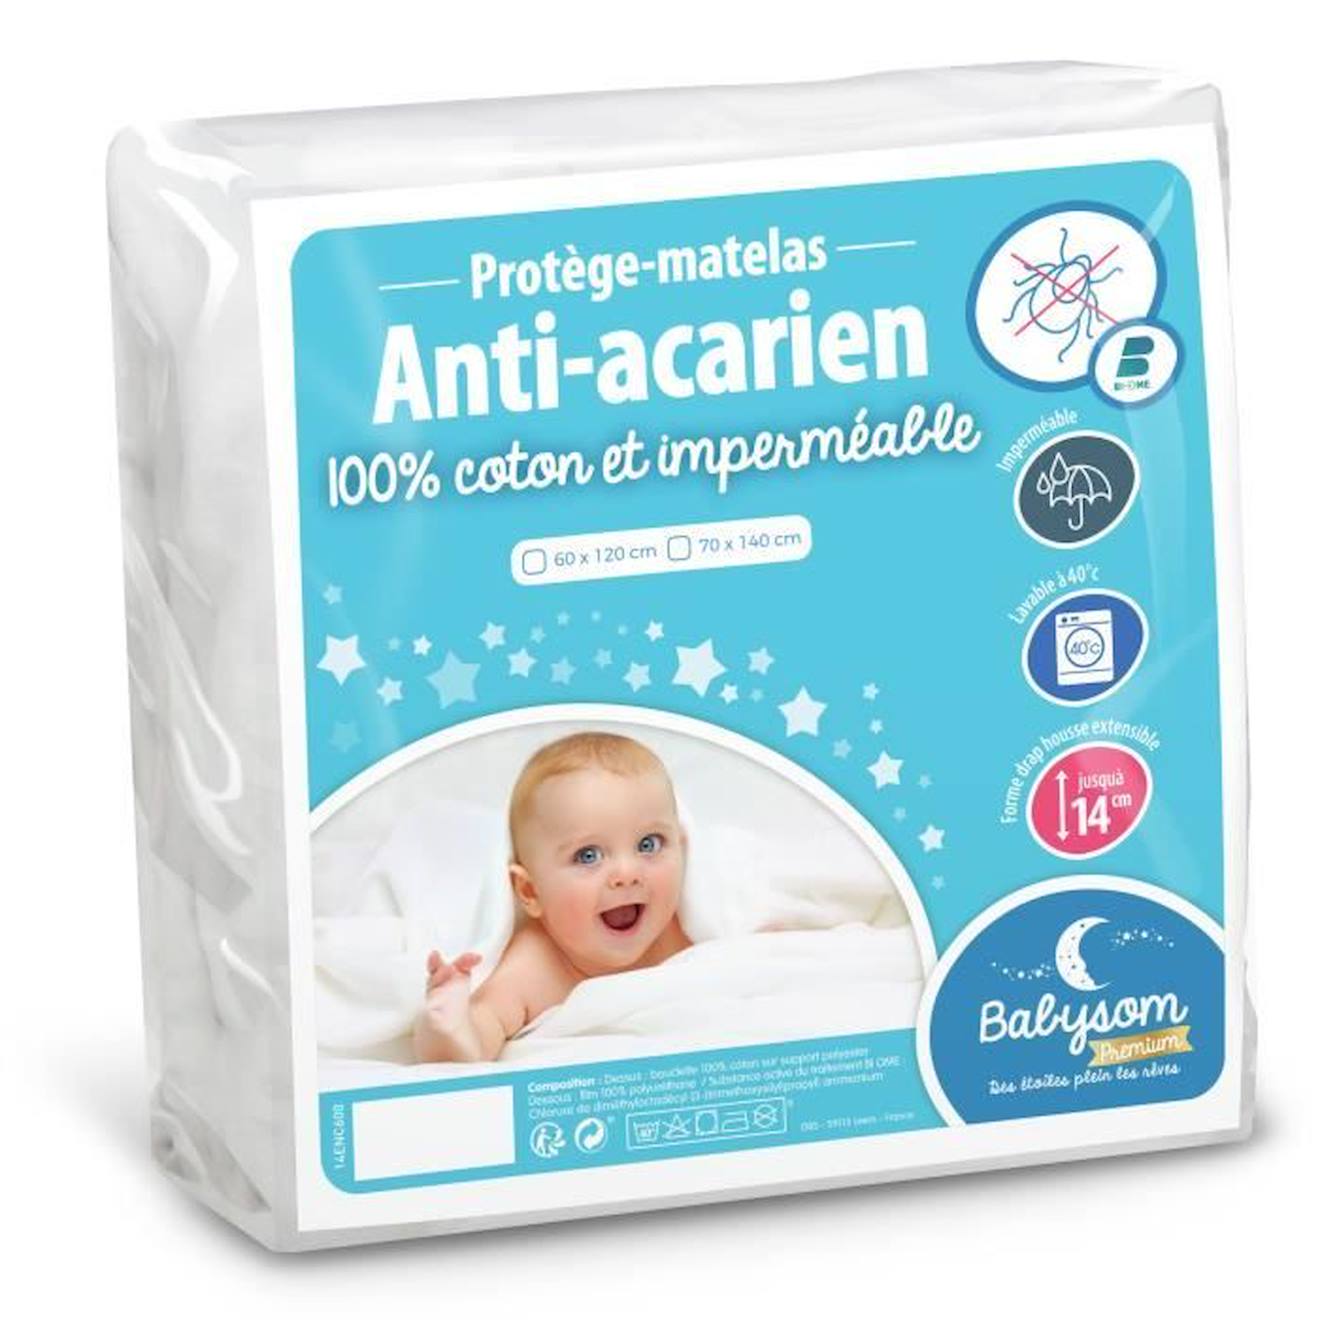 babysom - protège matelas bébé anti-acarien - 70x140 cm alèse imperméable souple et silencieuse bouclette 100% coton oeko-tex® blanc